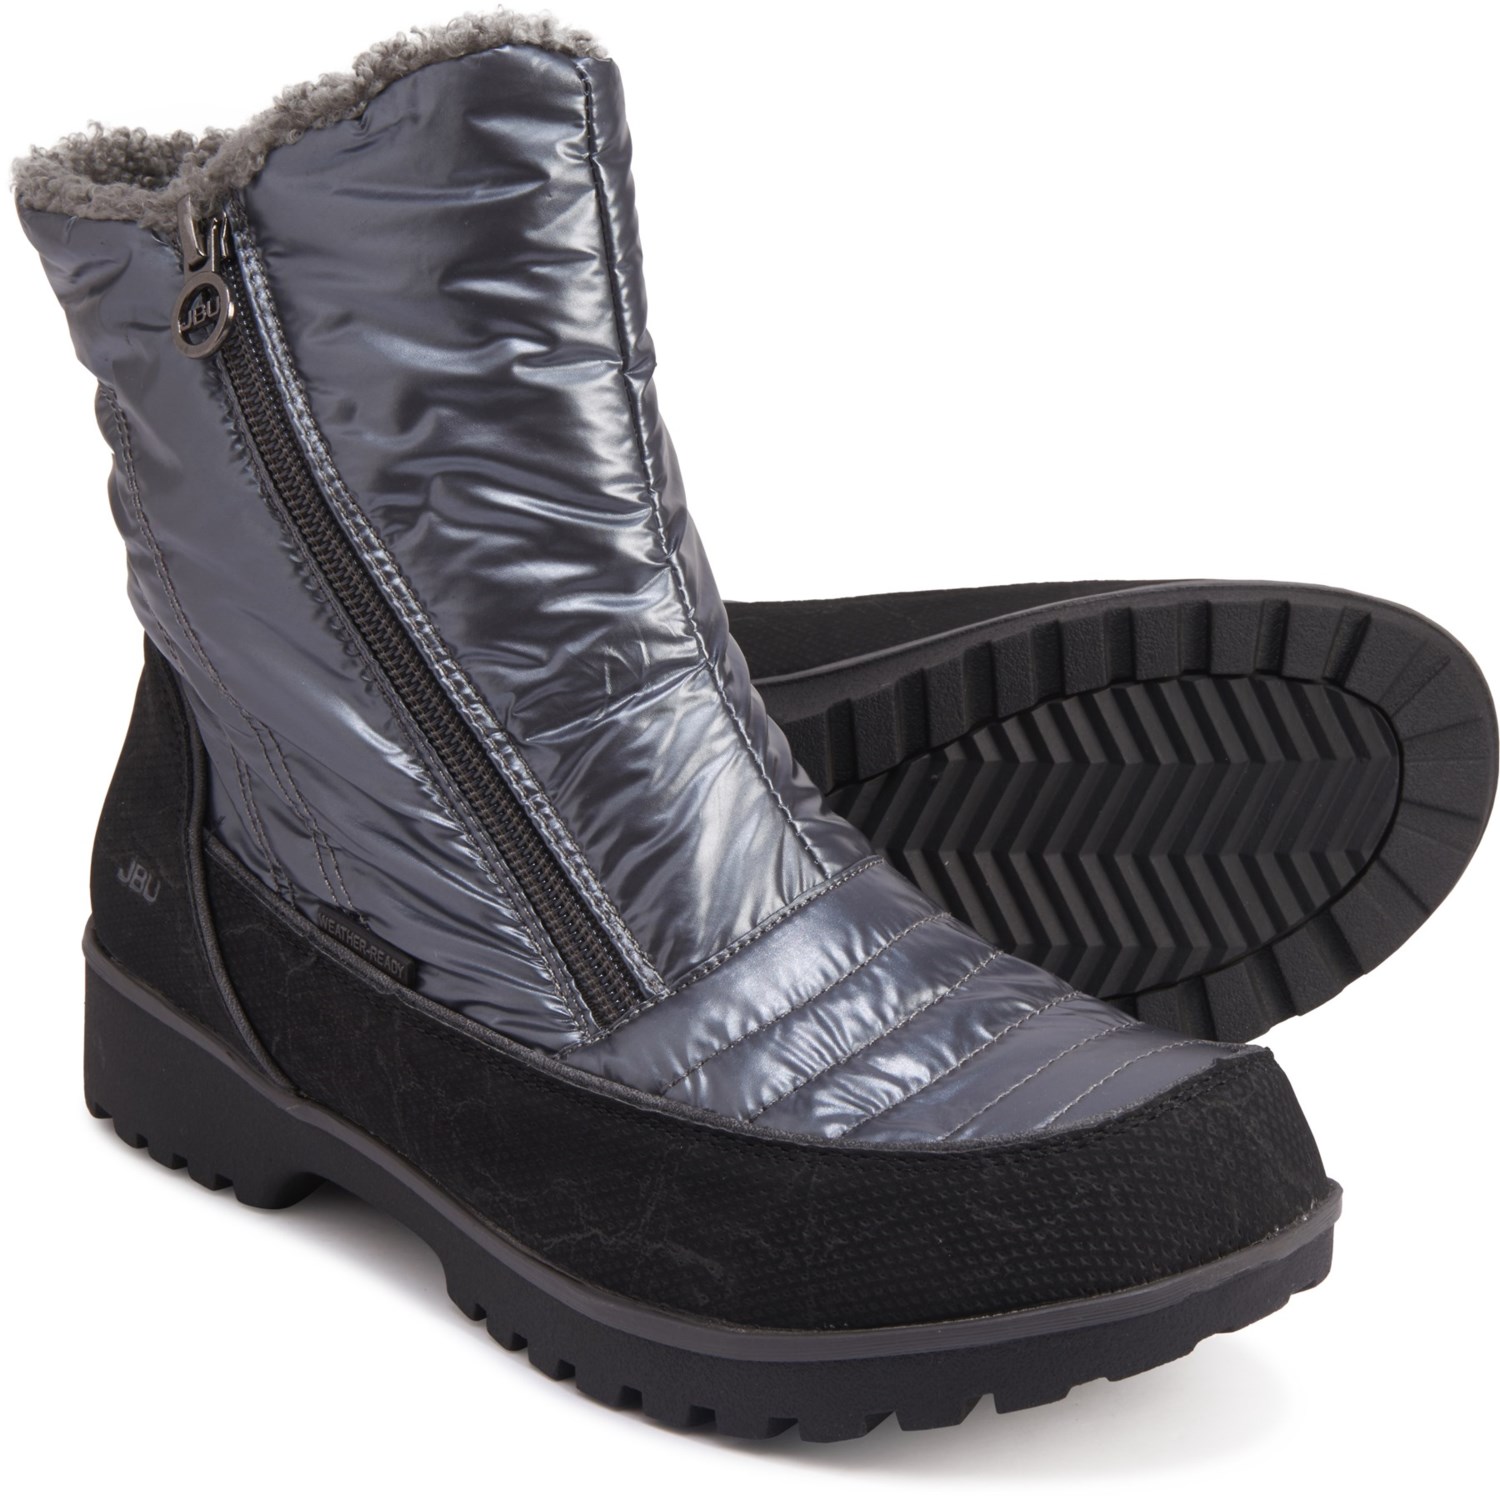 jbu snow boots